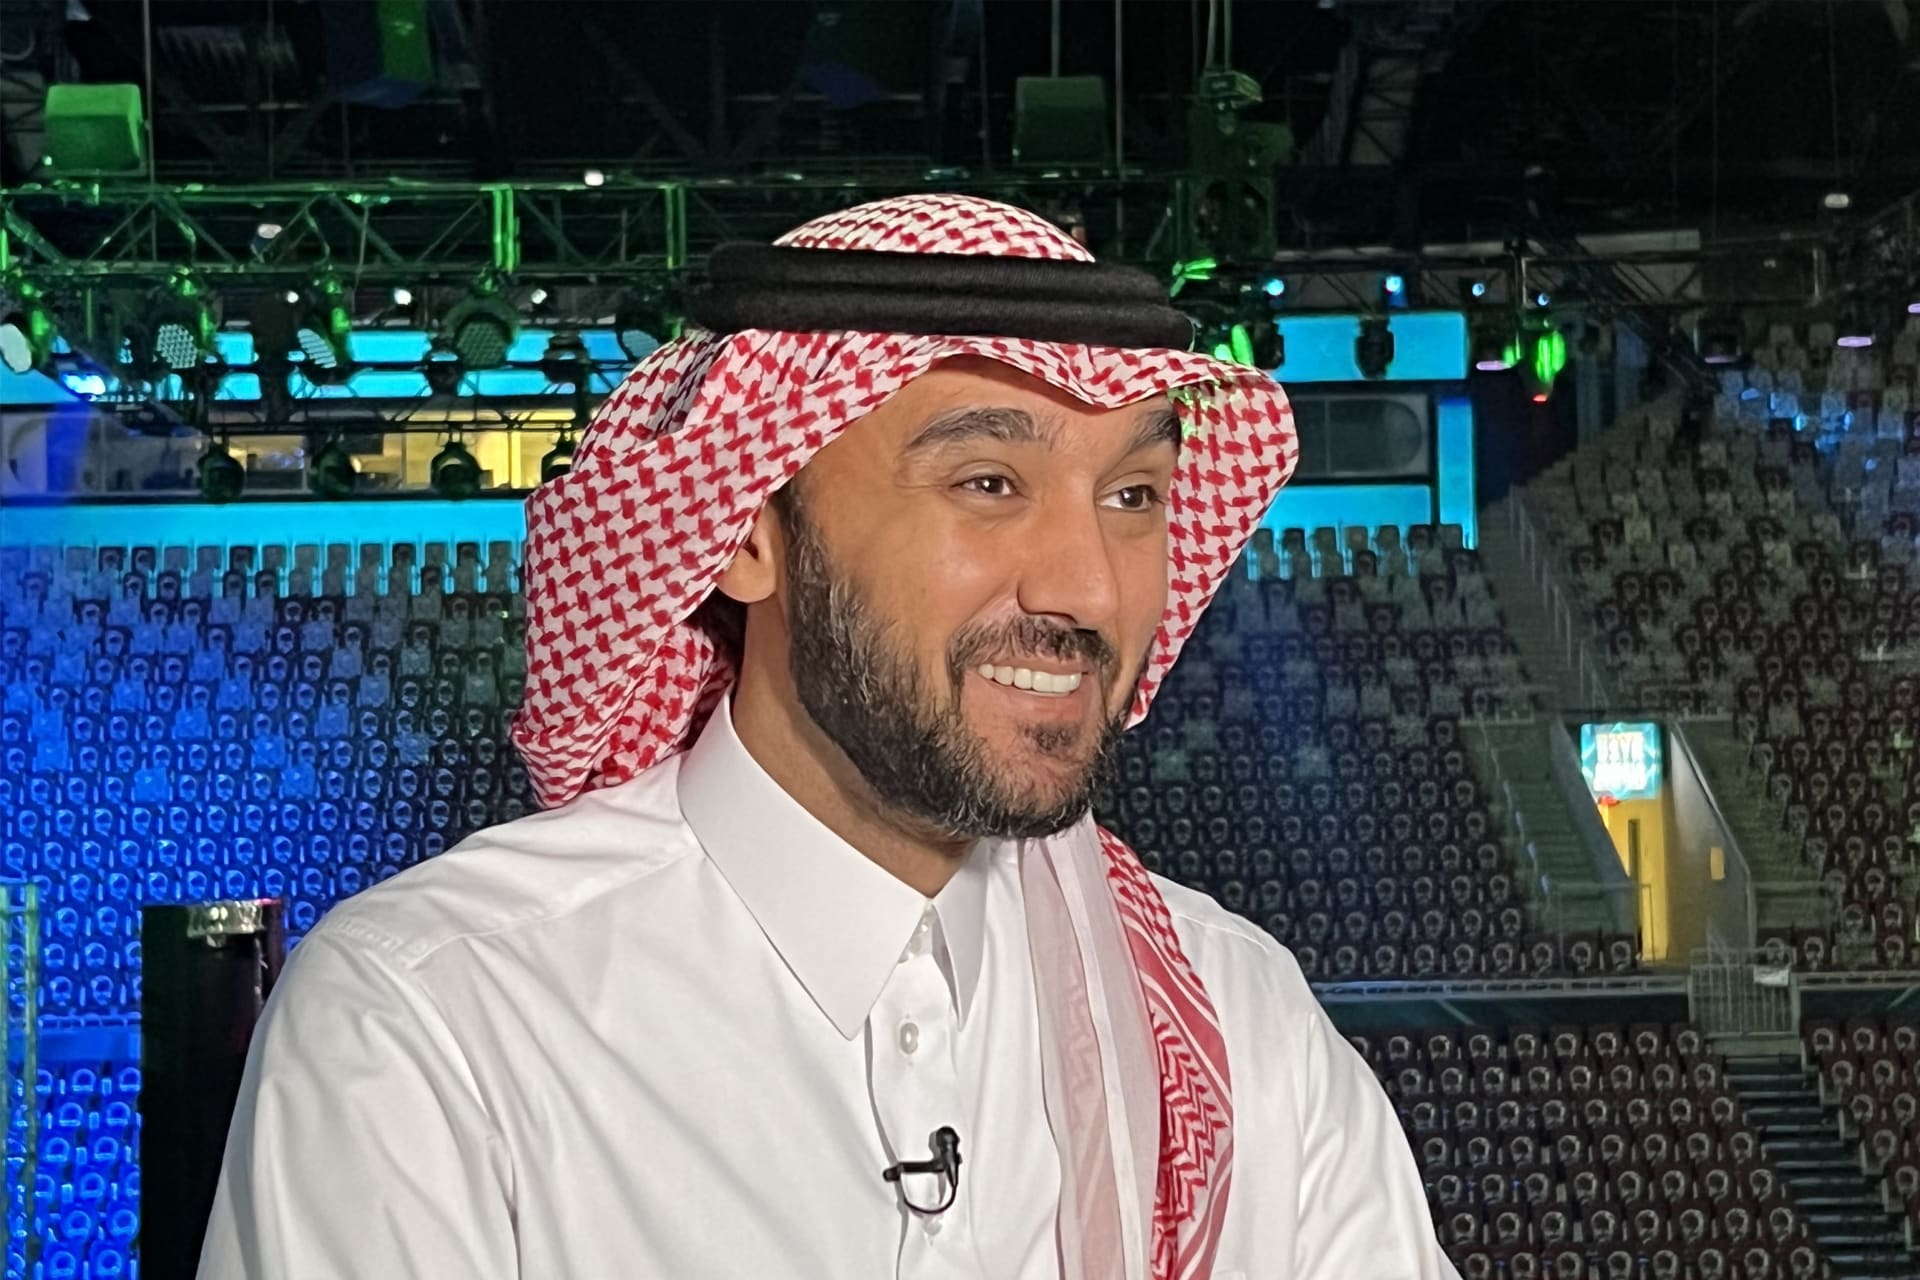 الأمير السعودي عبدالعزيز بن تركي الفيصل يرد على مصطلح "الغسيل الرياضي" وقضية جمال خاشقجي